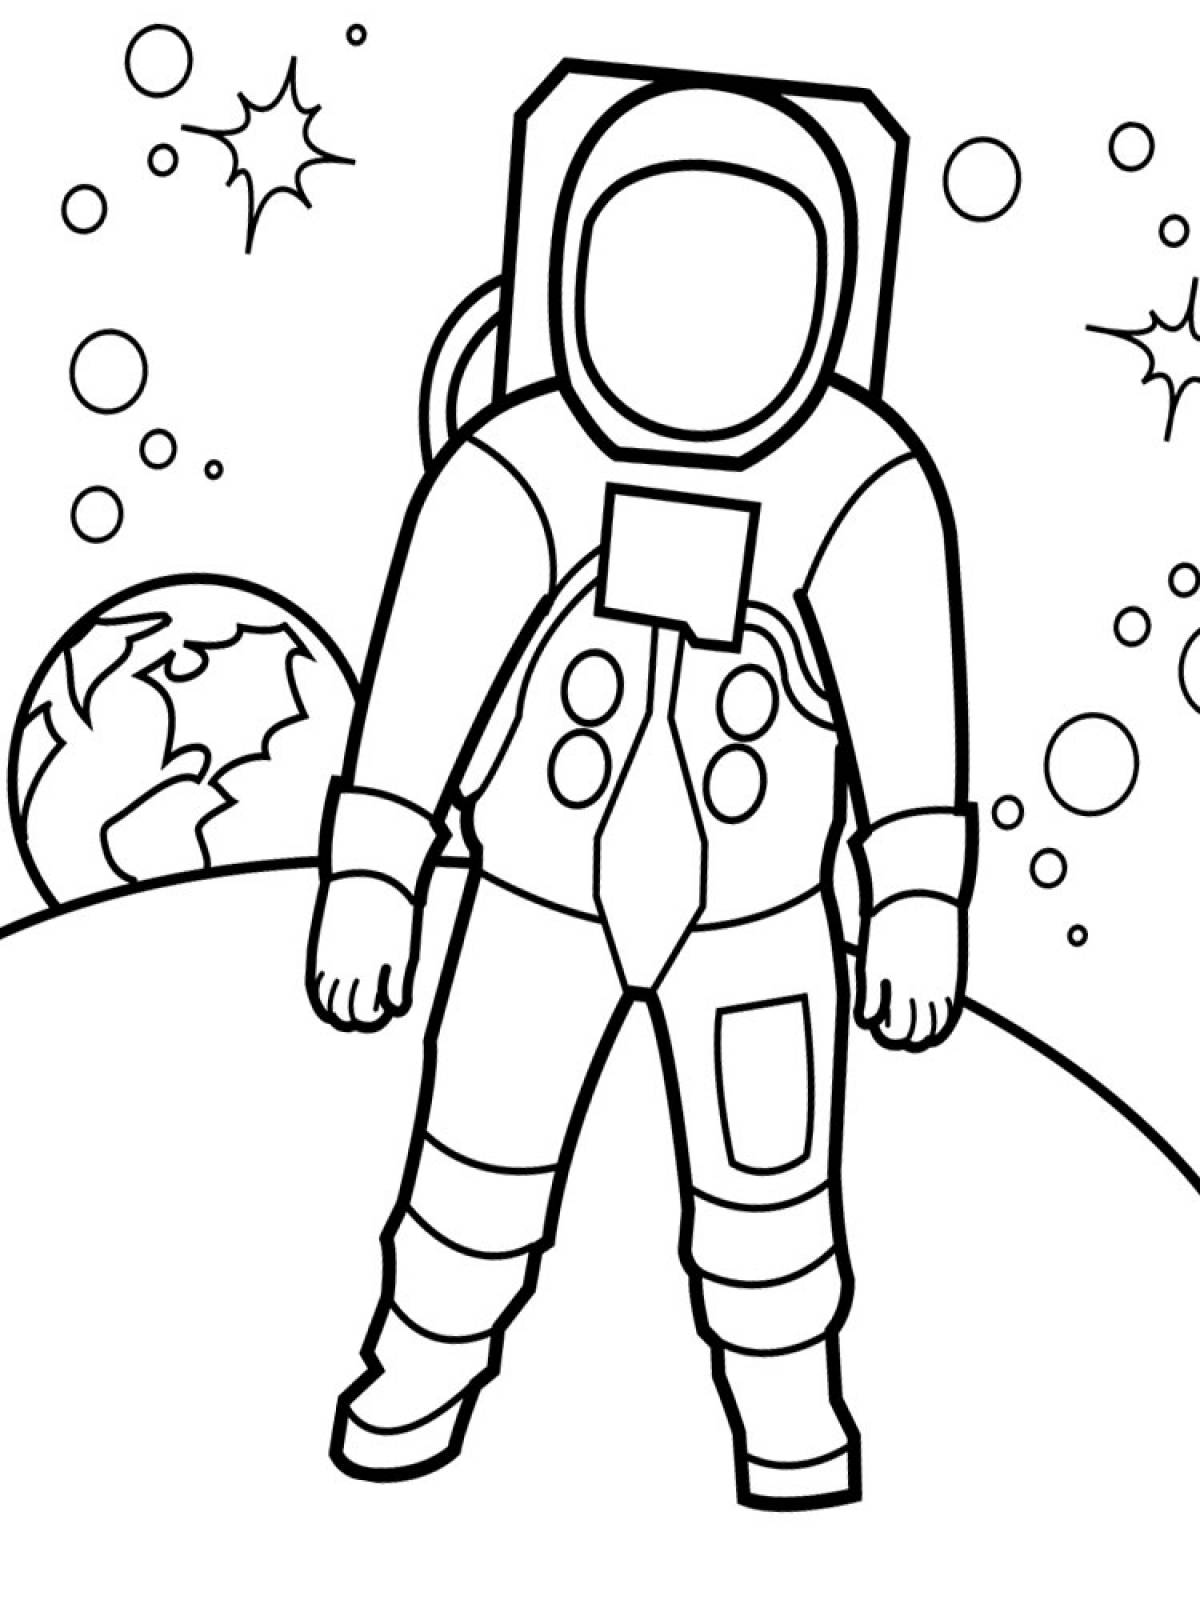 День космонавтики нарисовать карандашом. Космонавт раскраска для детей. Космос раскраска для детей. Раскраска день космонавтики для детей. День космонавтики раскраска для малышей.